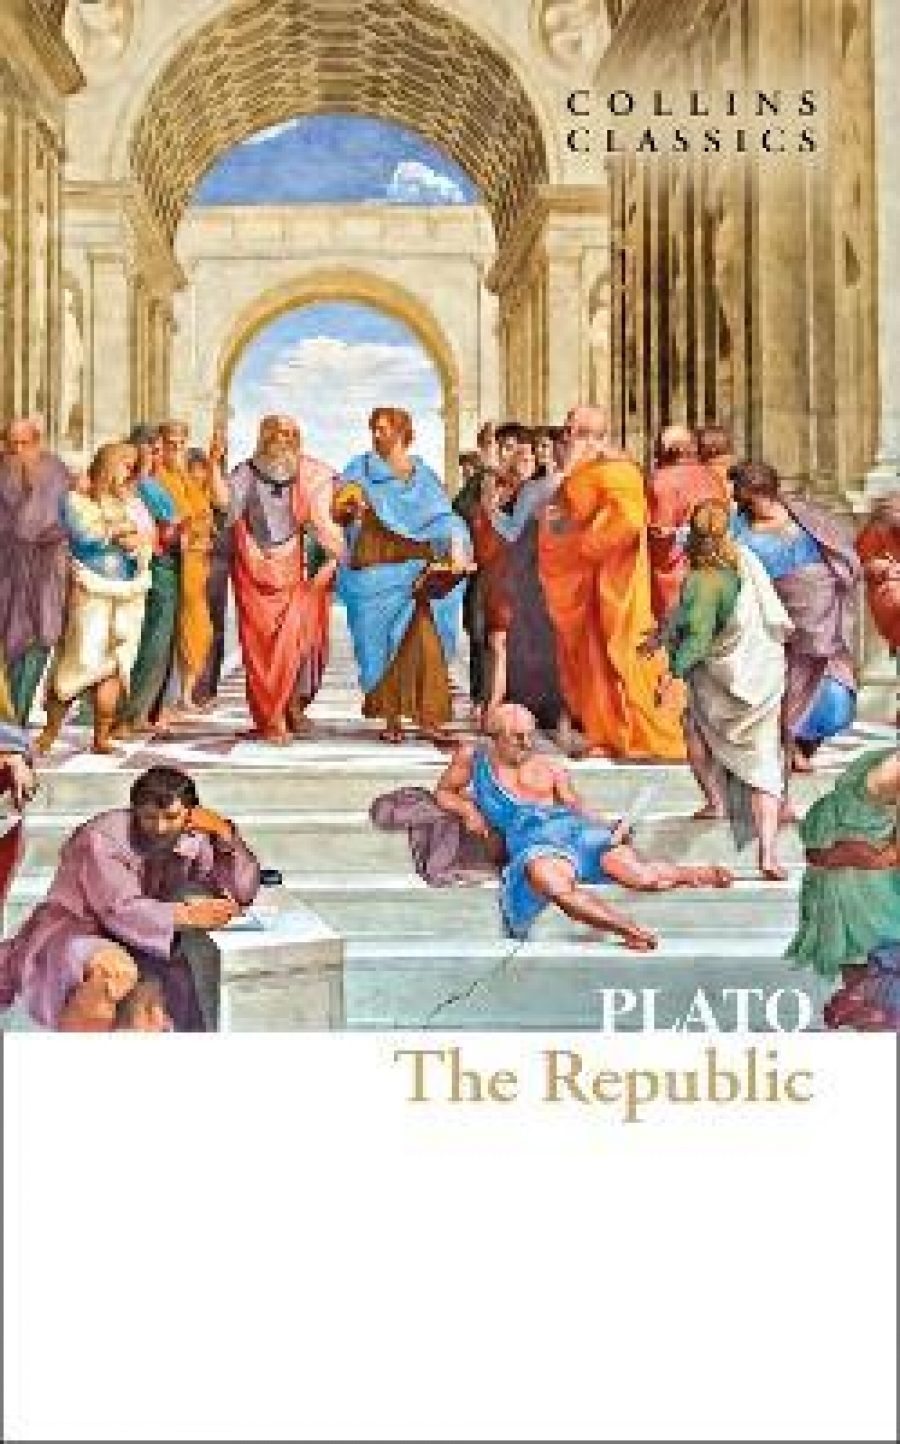 Plato Republic 